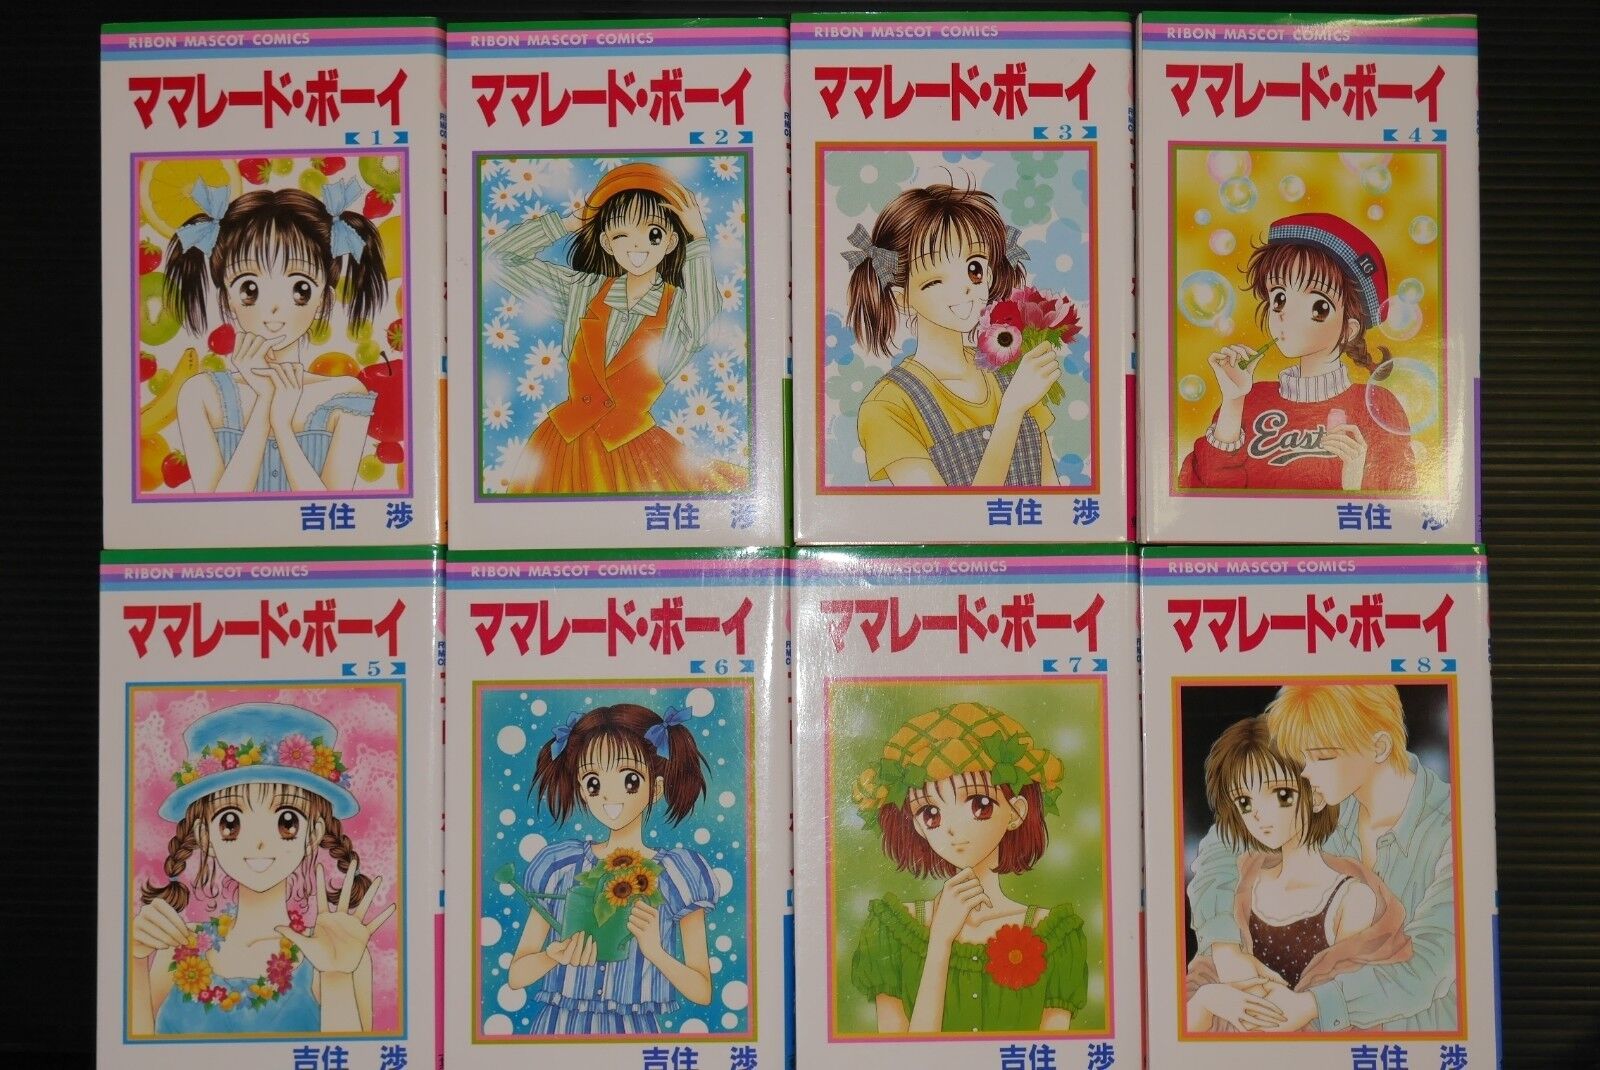 Marmalade Boy Complete Manga Set 1-8 by Wataru Yoshizumi - Japanese Edition